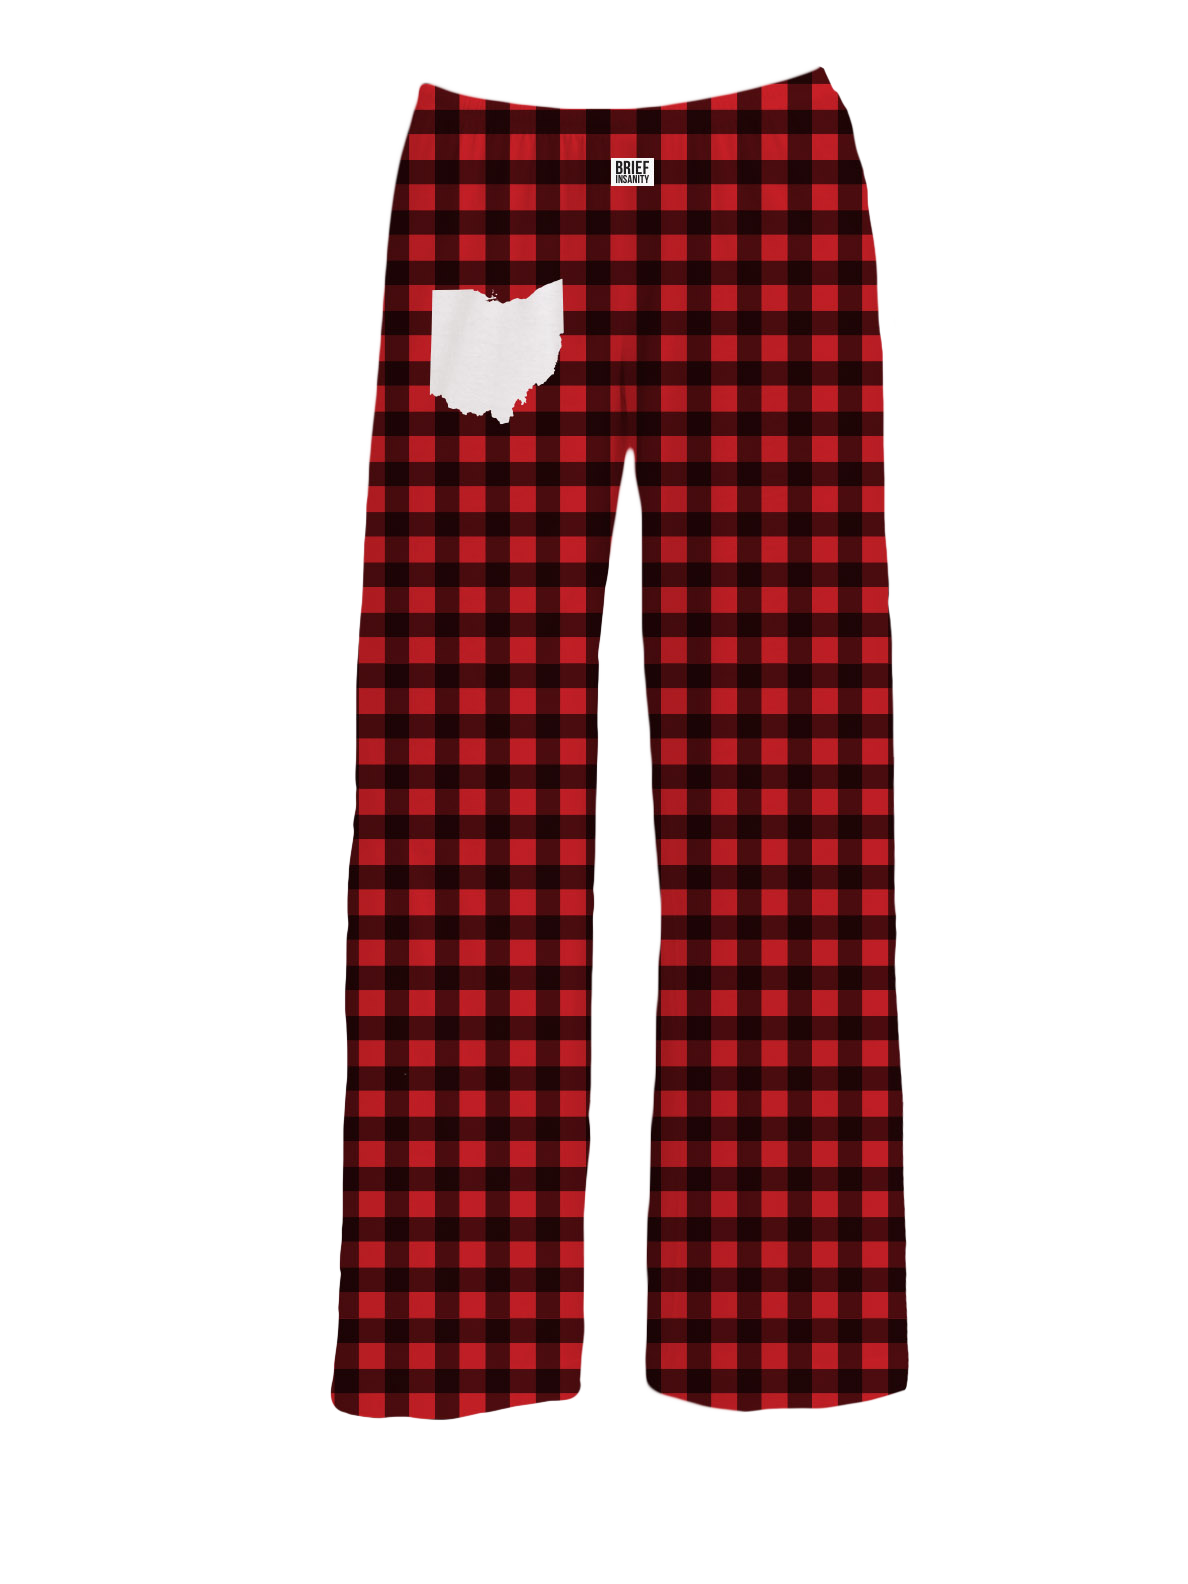 Ohio Red Buffalo Plaid Pajama Pants, Brief Insanity